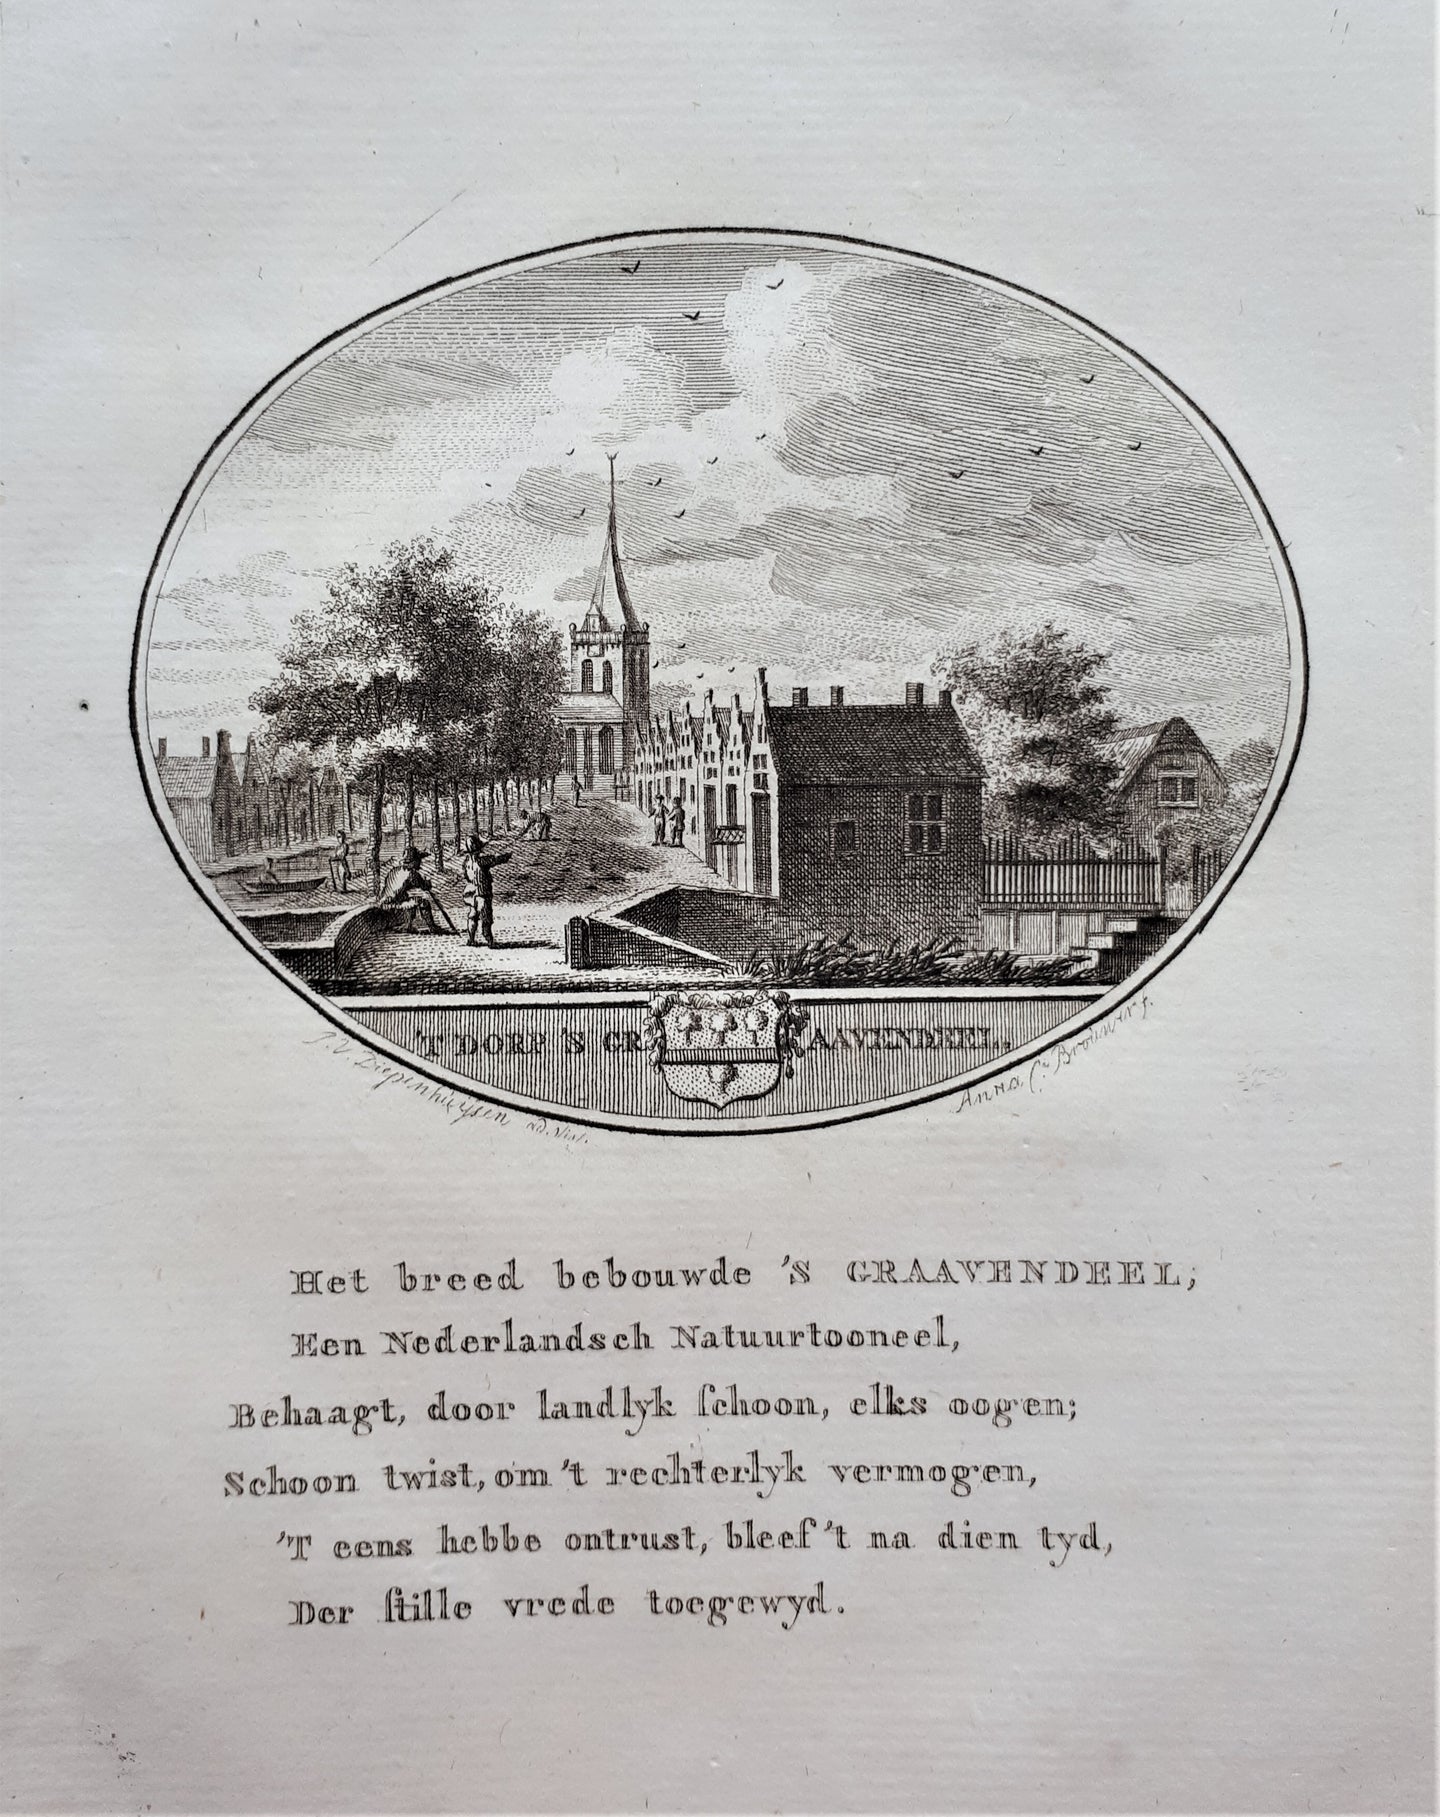 GRAVENDEEL 'S - Van Ollefen & Bakker - 1793